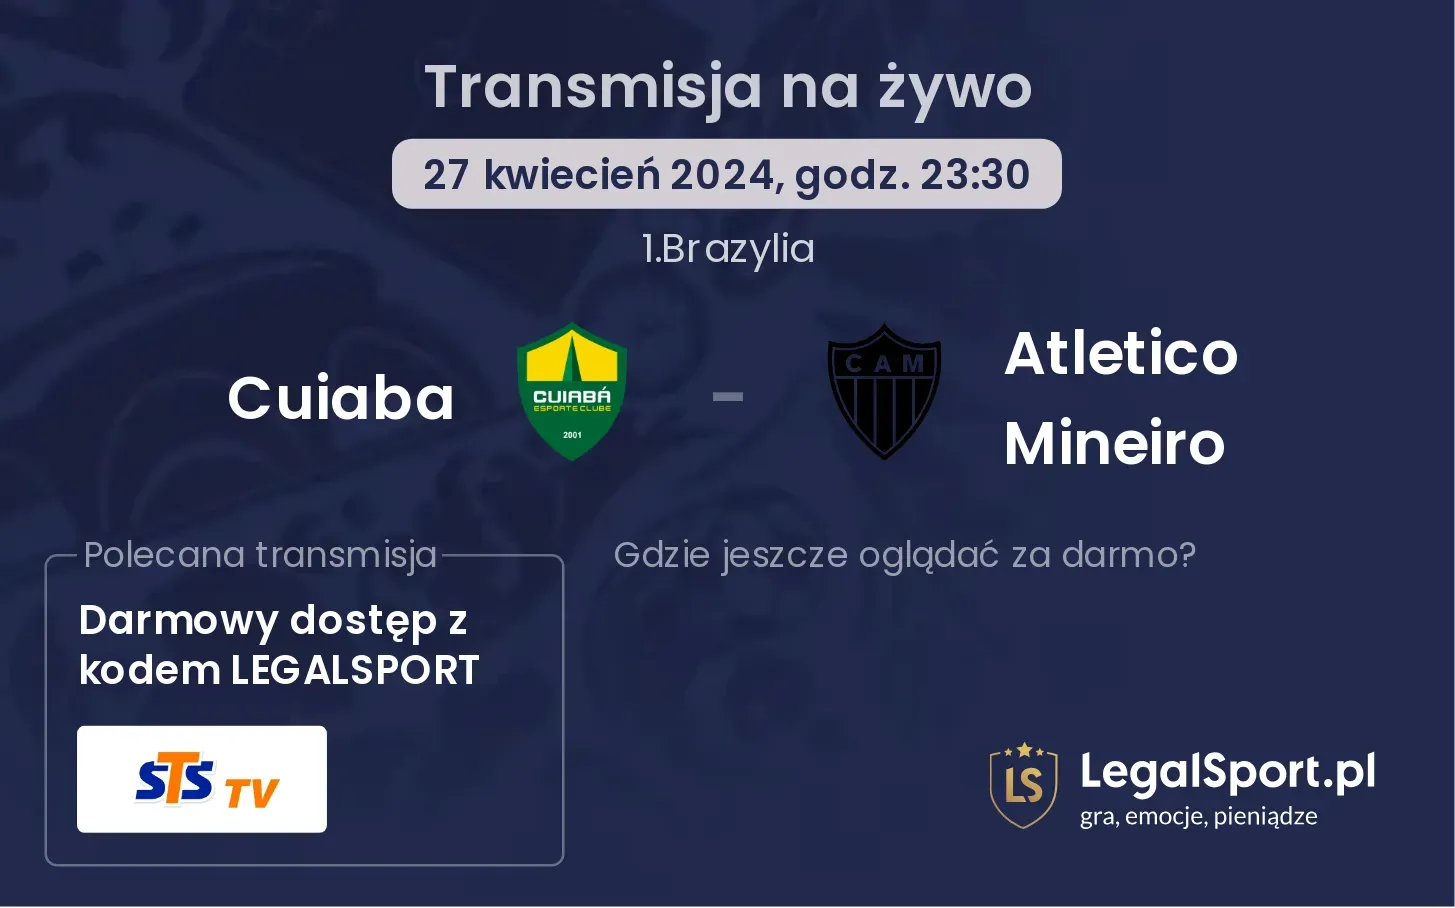 Cuiaba - Atletico Mineiro transmisja na żywo